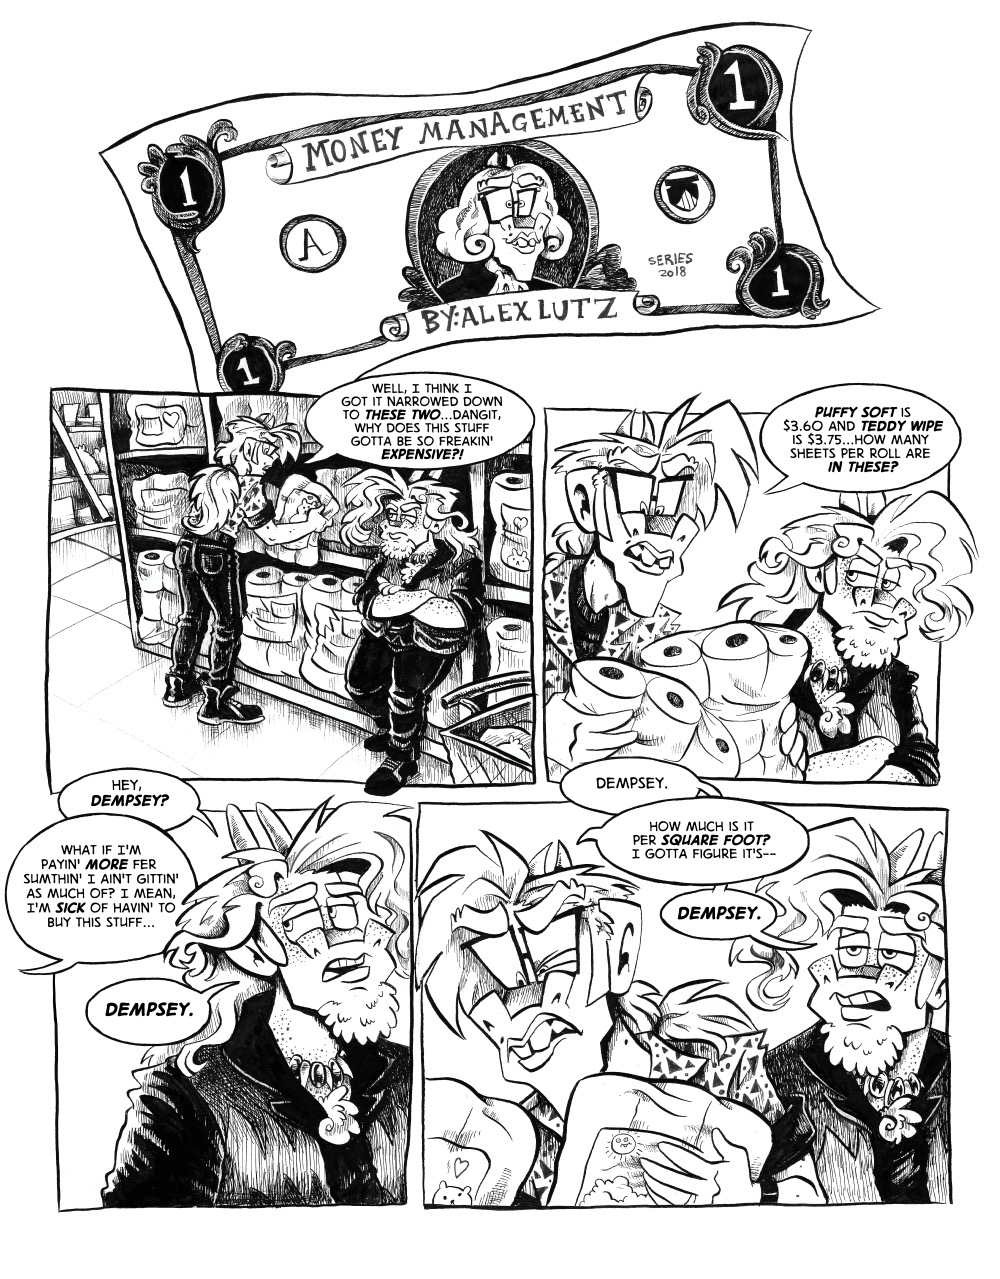 Money Management page 1 (Bonus Comic)